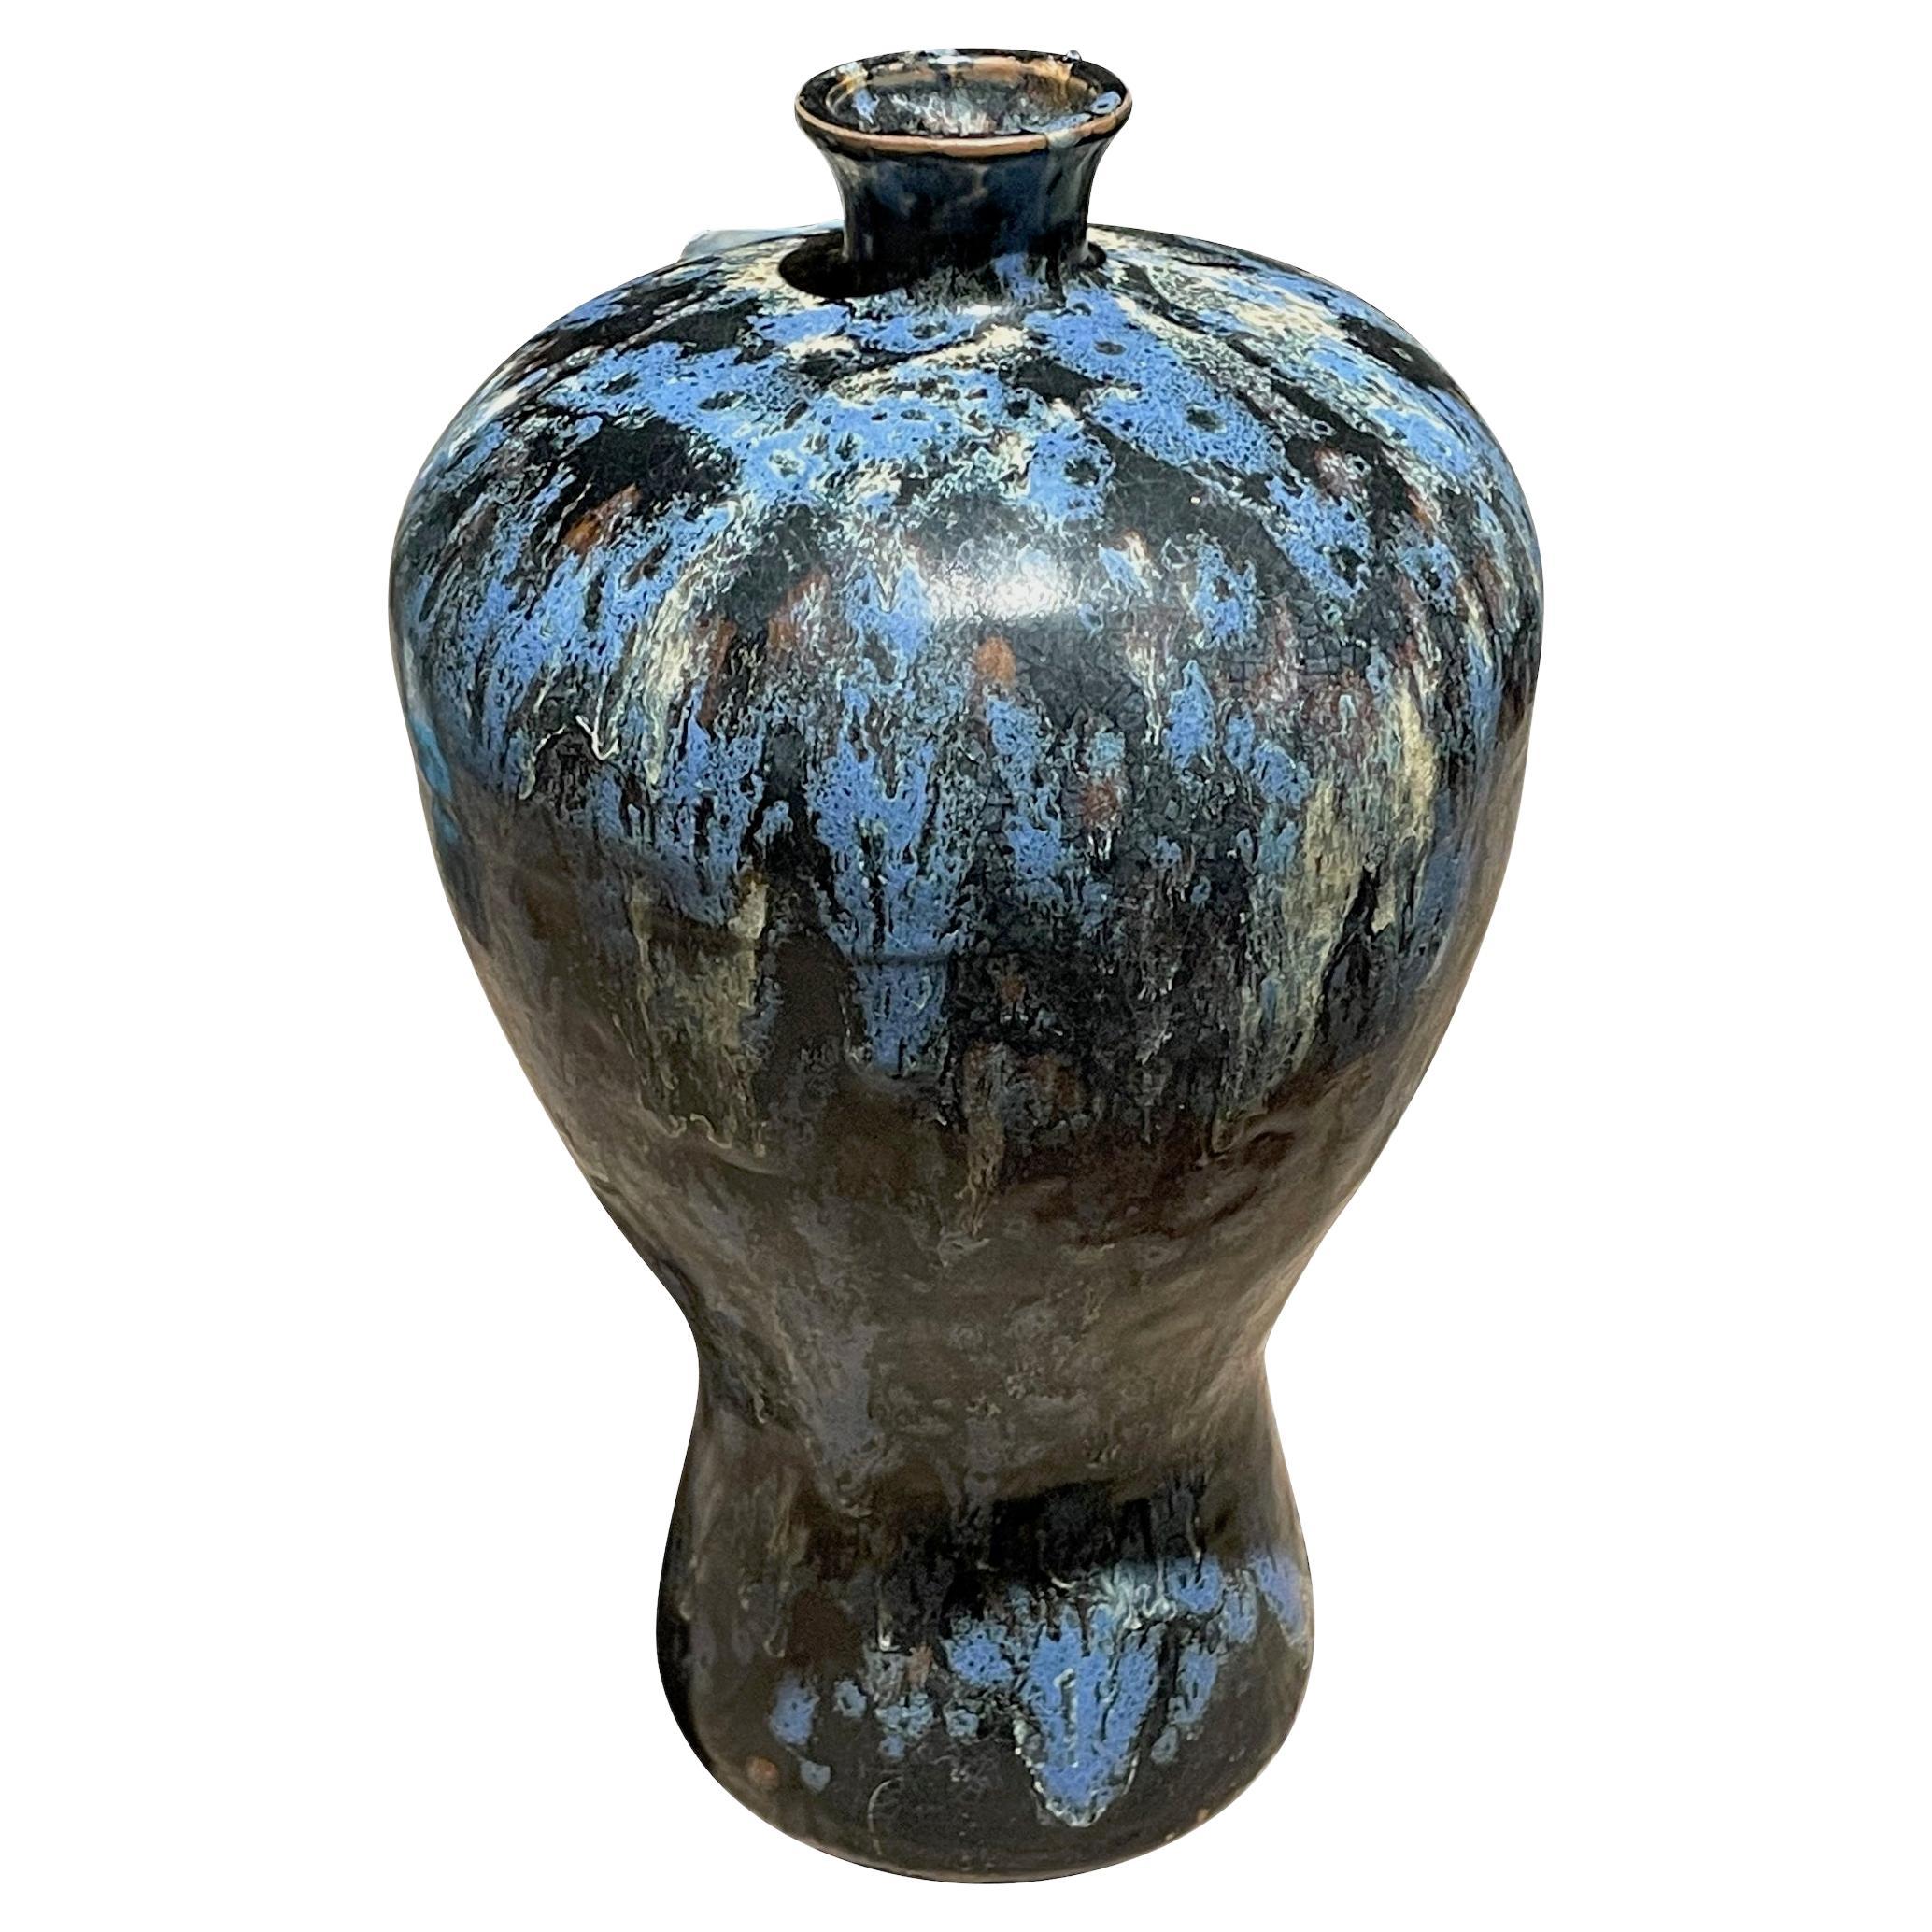 Schwarze, blaue und weiße Vase in geschwungener Form mit Spritzglasur, China, zeitgenössisch